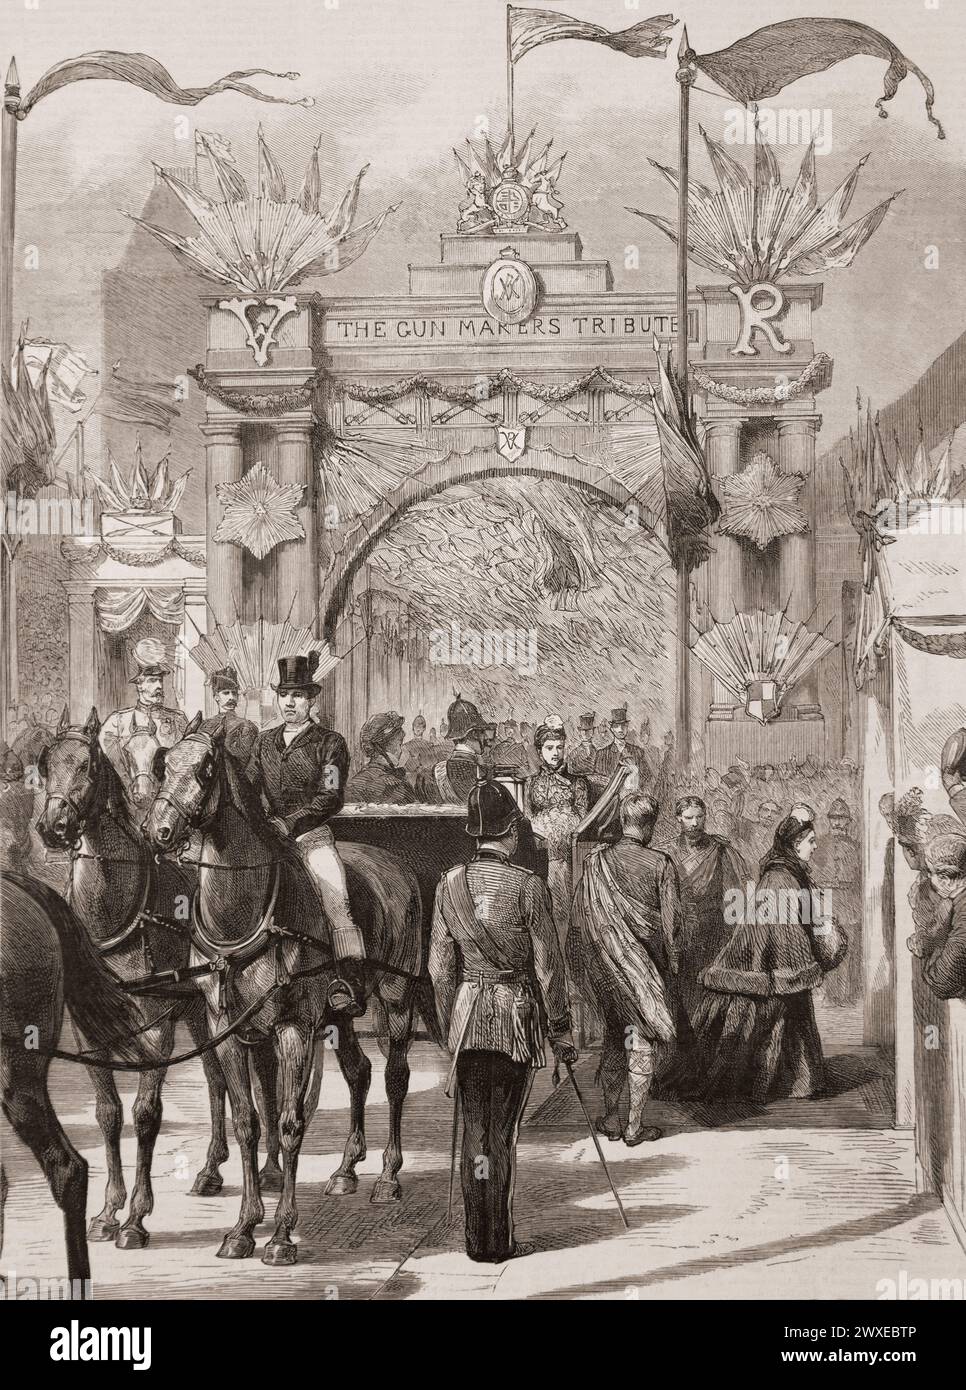 Arrivée de la reine Victoria au pavillon pour poser la première pierre des nouveaux Victoria courts - l'arche des Gunmakers, Birmingham, Angleterre. Tiré du journal Graphic Illustrated Weekly, imprimé en 1887. Banque D'Images